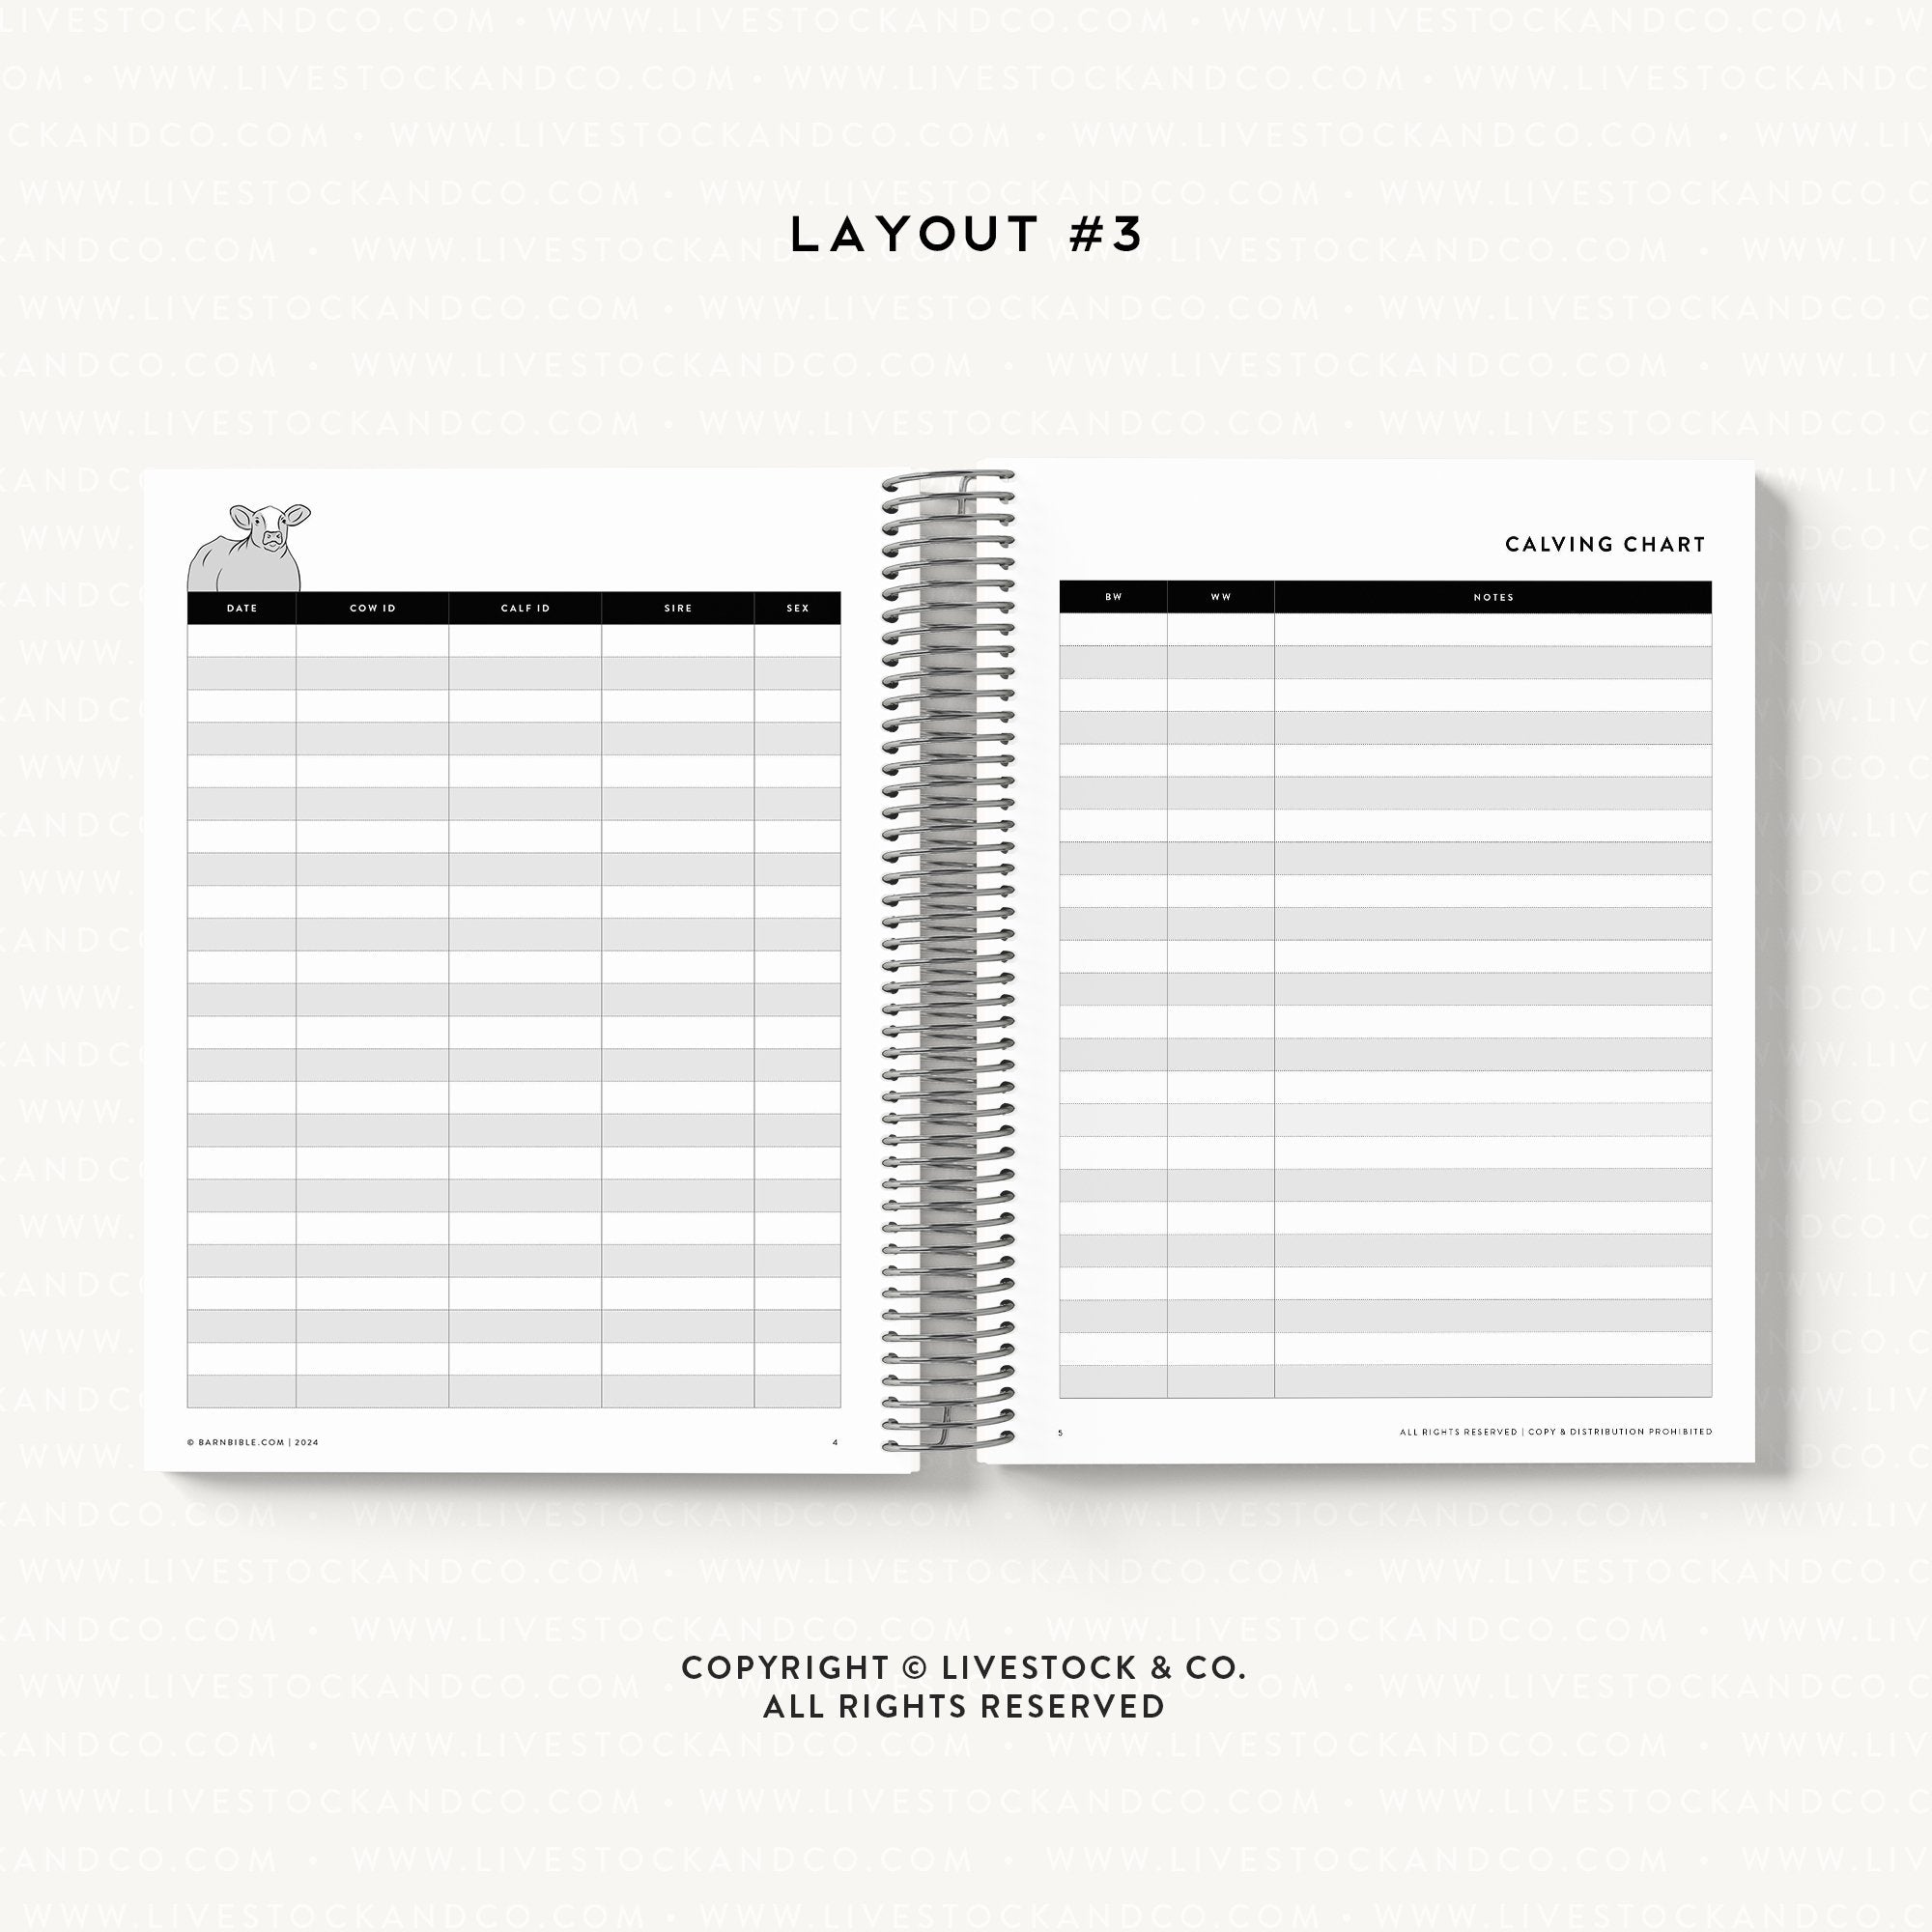 Personalized-Livestock-Calving Record Planner - Serape Cover